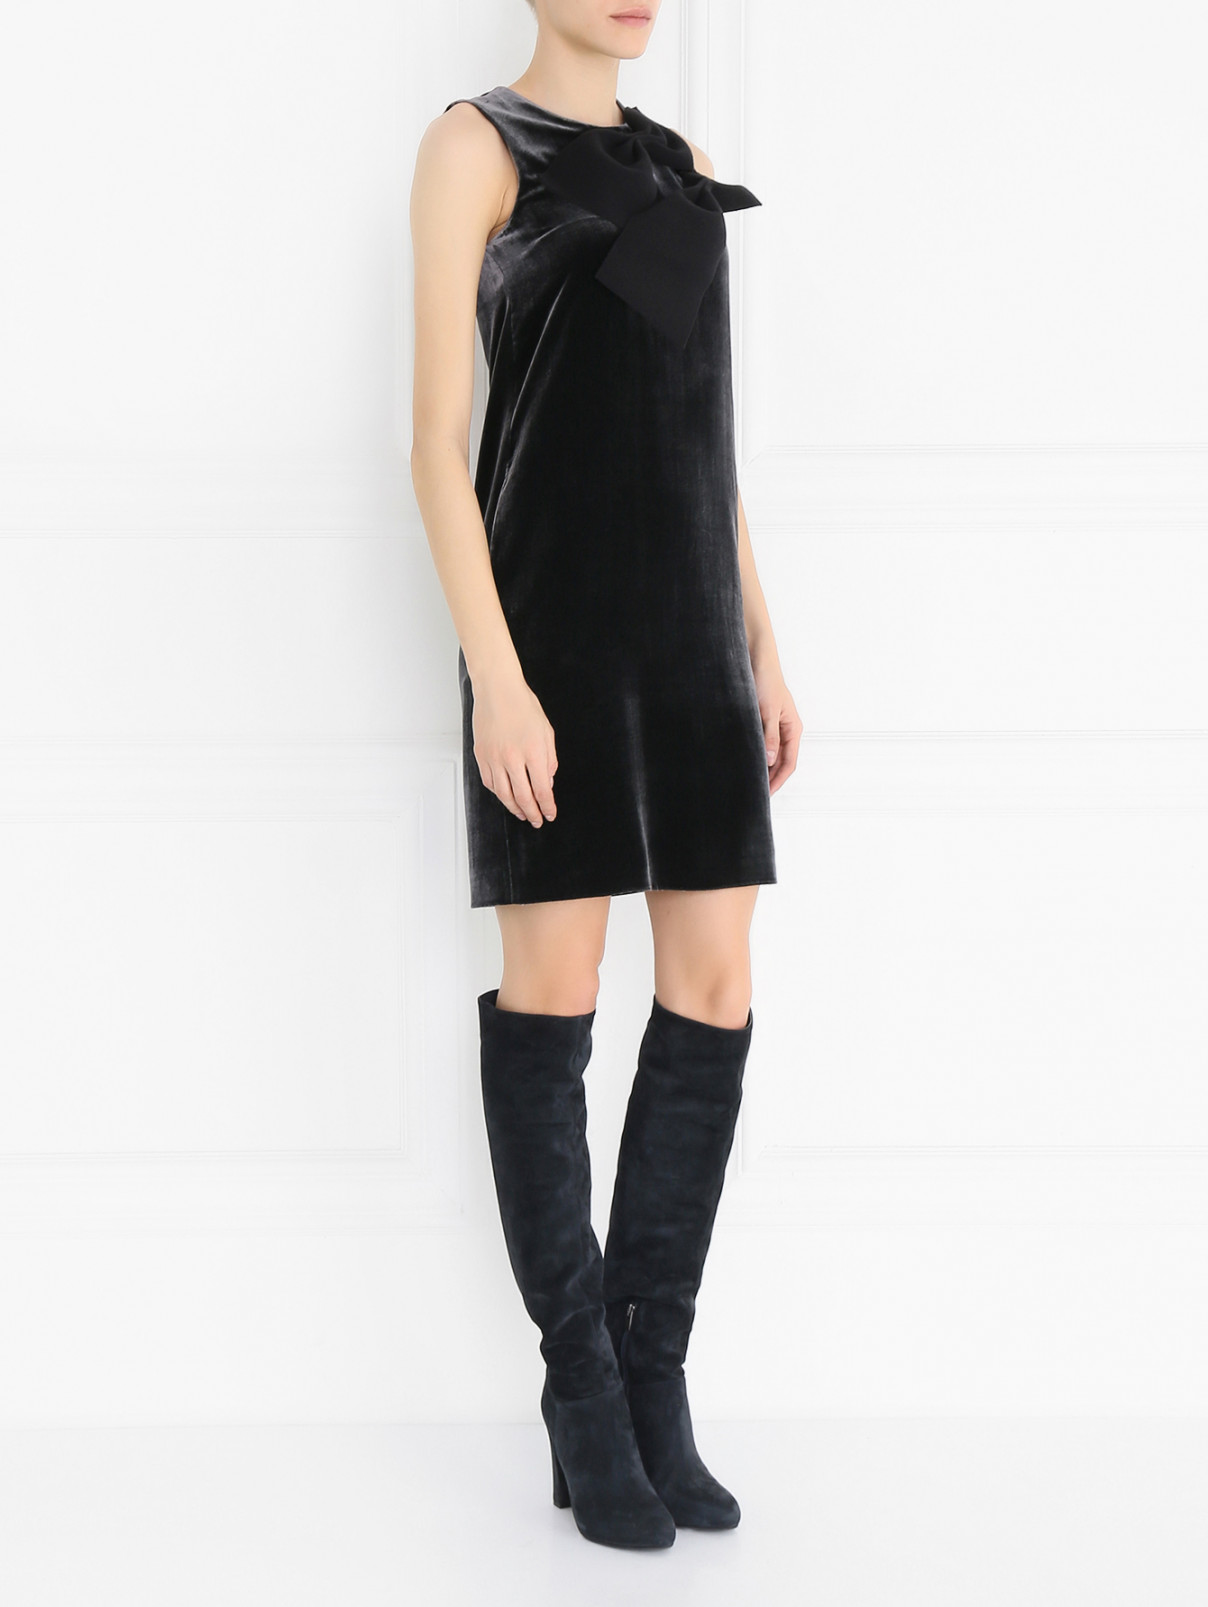 Платье без рукавов с декором Emporio Armani  –  Модель Общий вид  – Цвет:  Черный